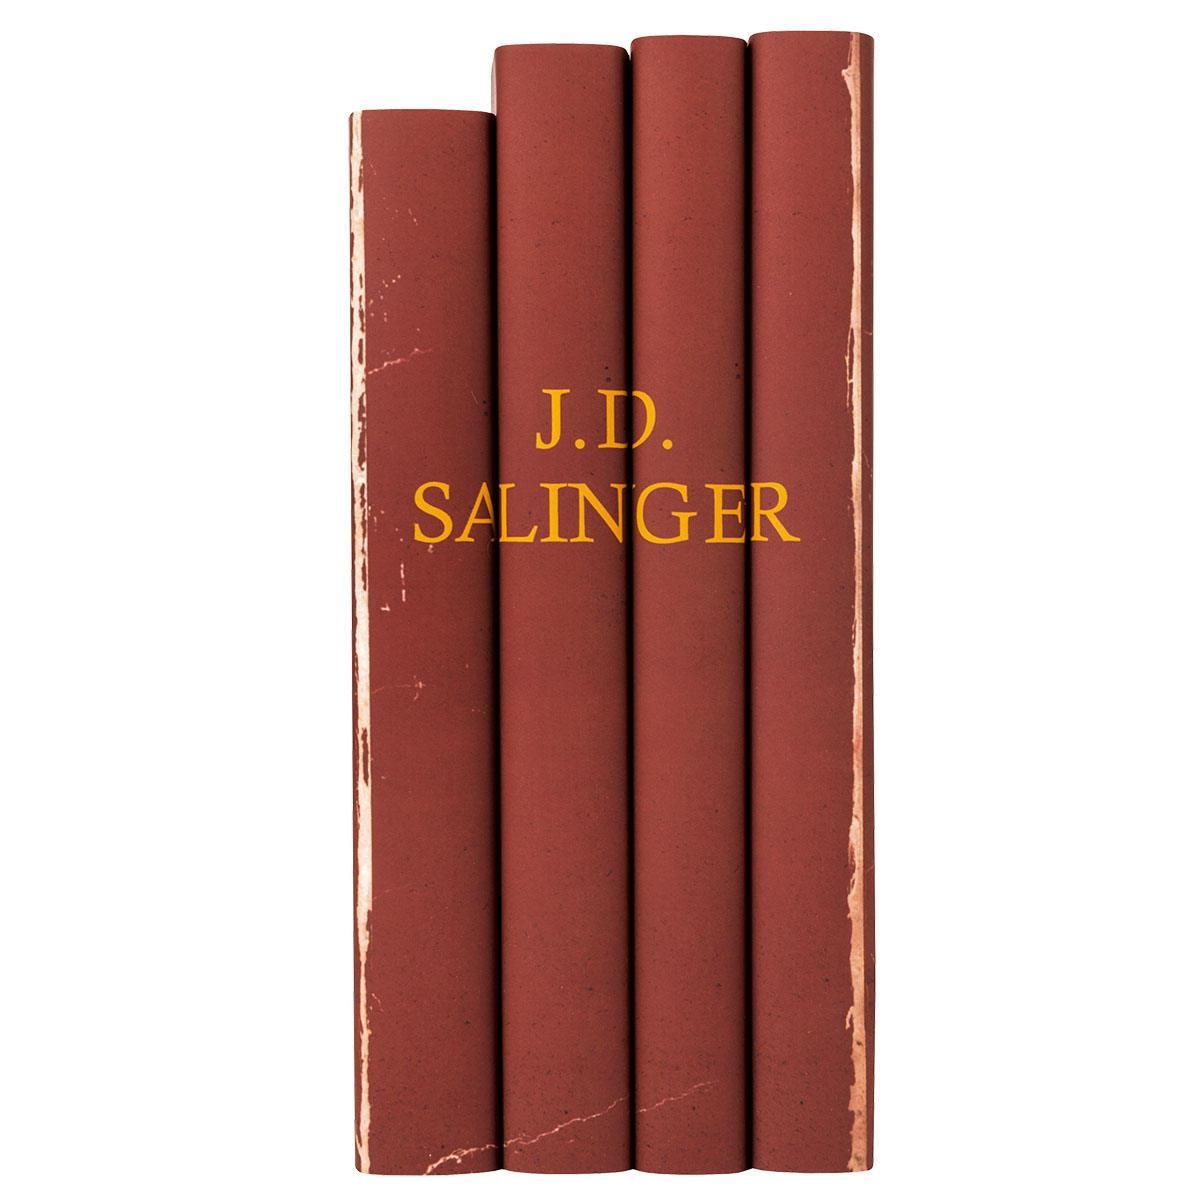 J.D. Salinger Set